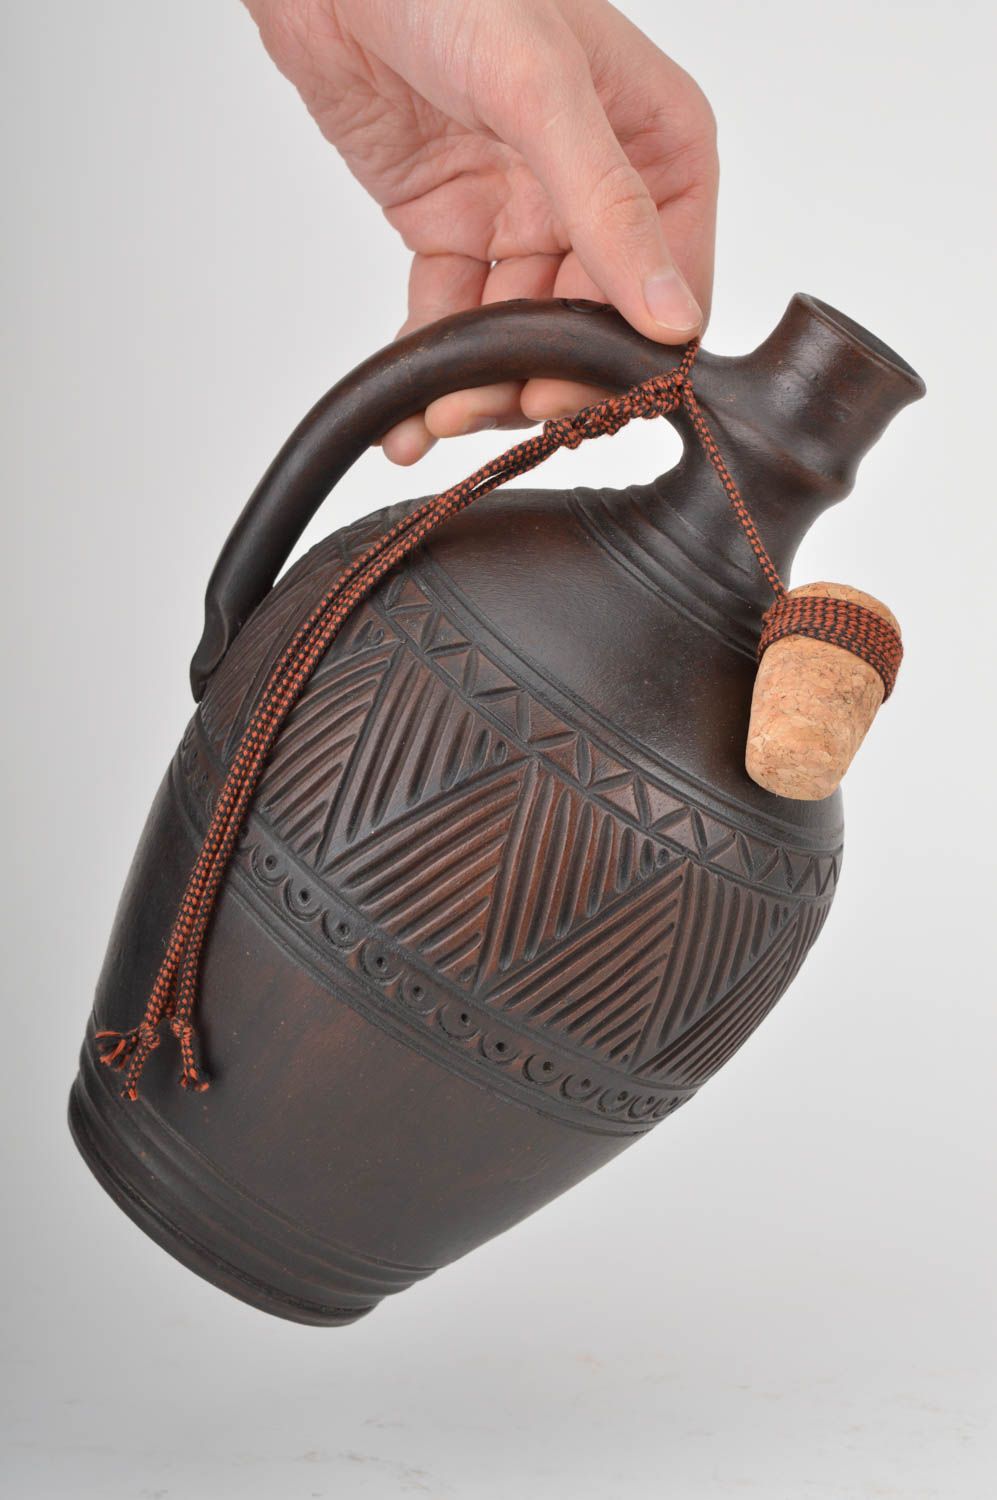 Ton Krug mit Holz Kork Keramik Geschirr für Küche handmade dunkel 2 l originell foto 3